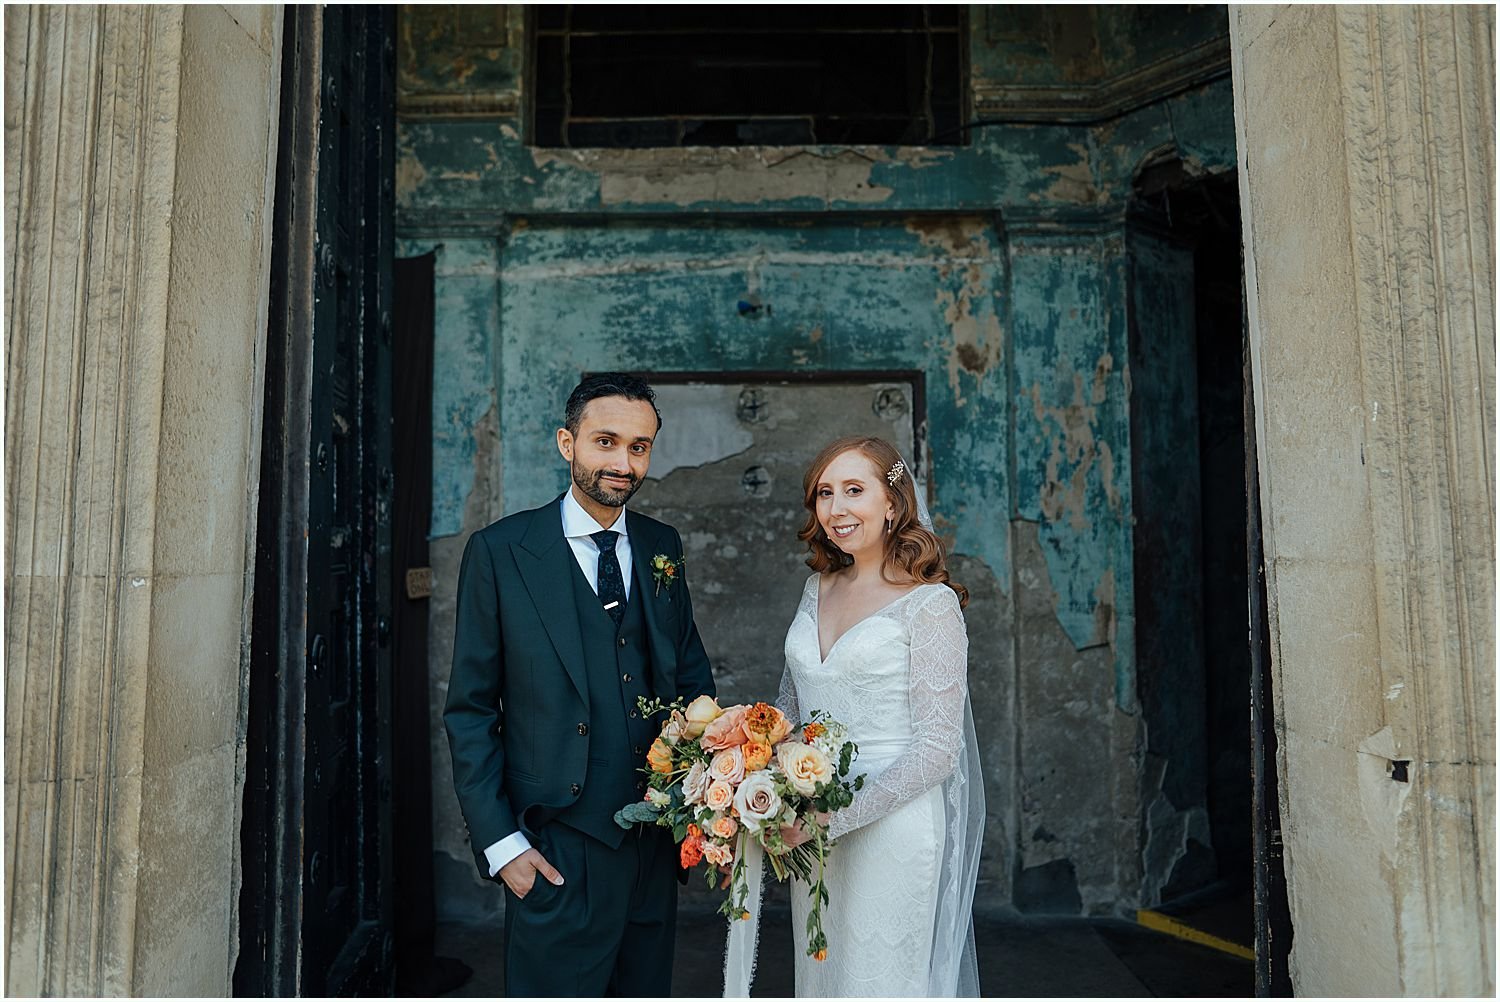 Bride and groom in front of doors